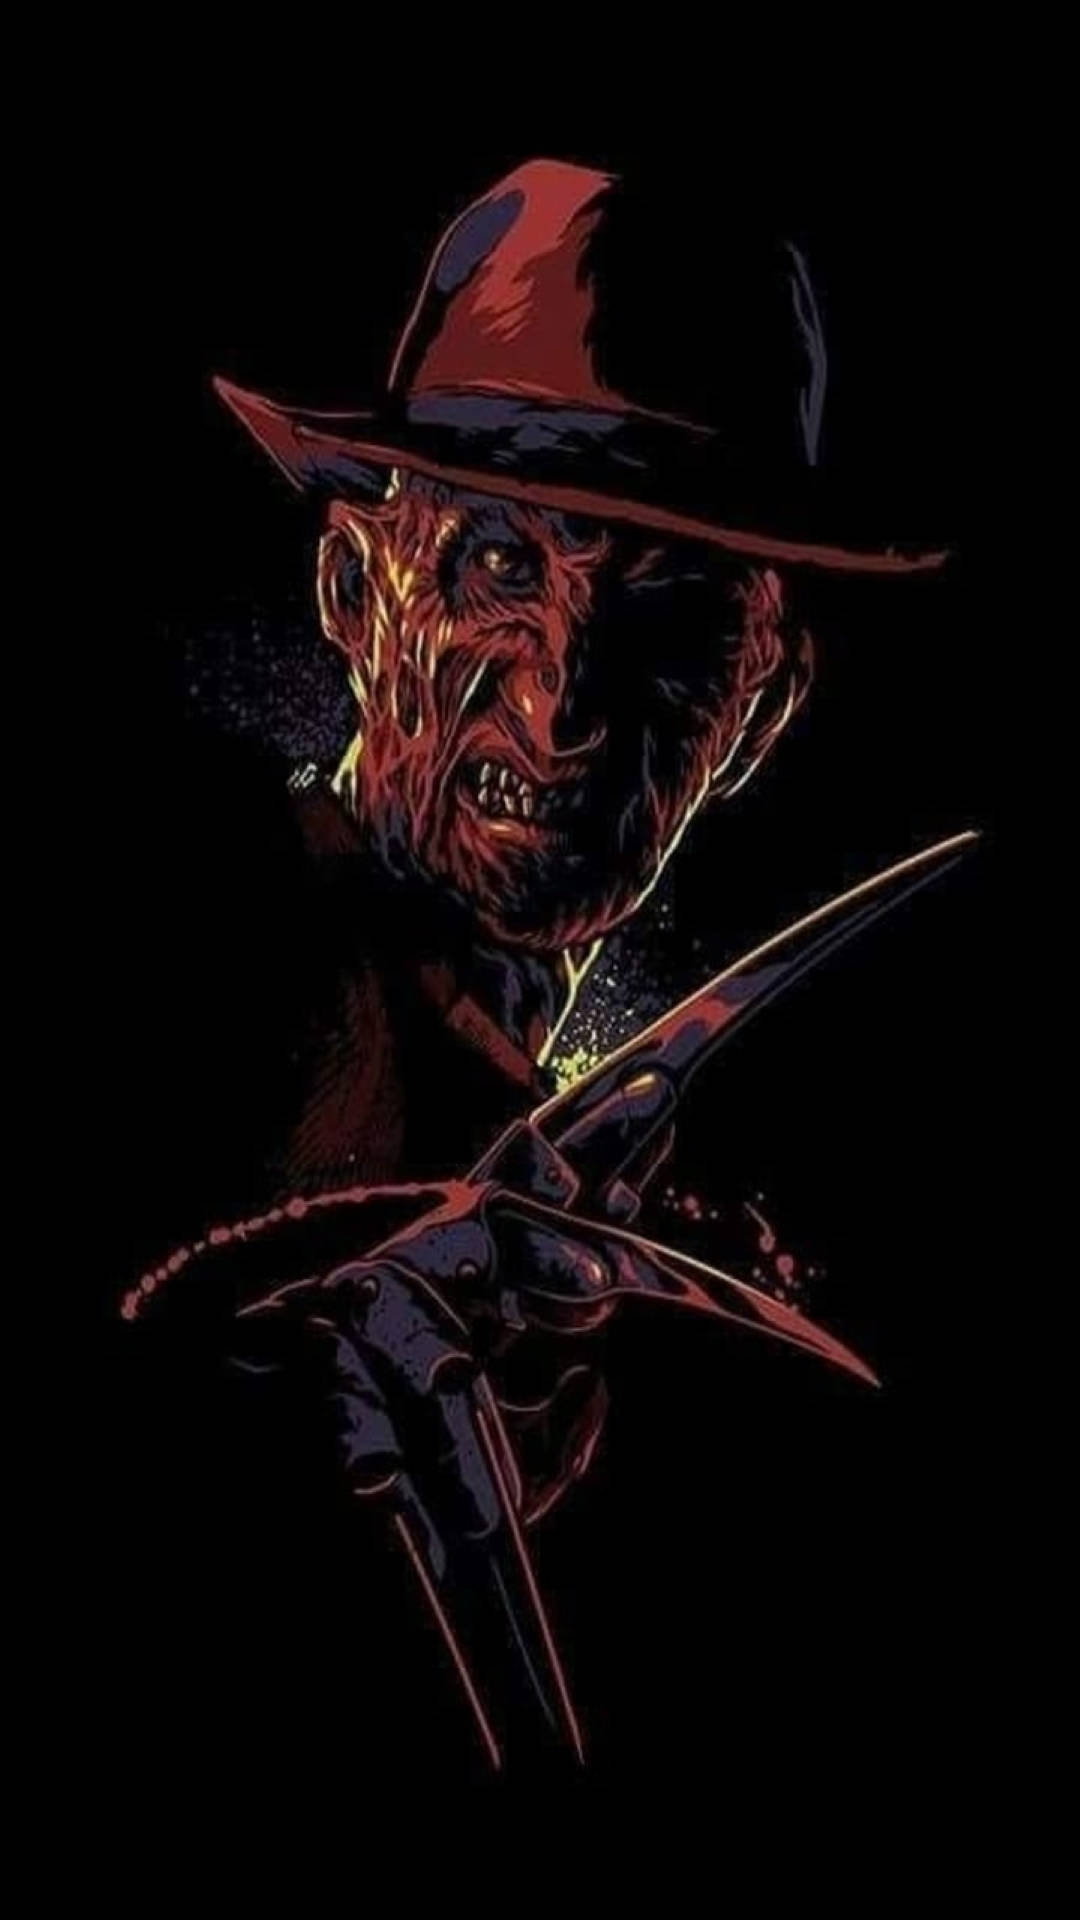 Intimidating Freddy Krueger In A Dark Setting Background